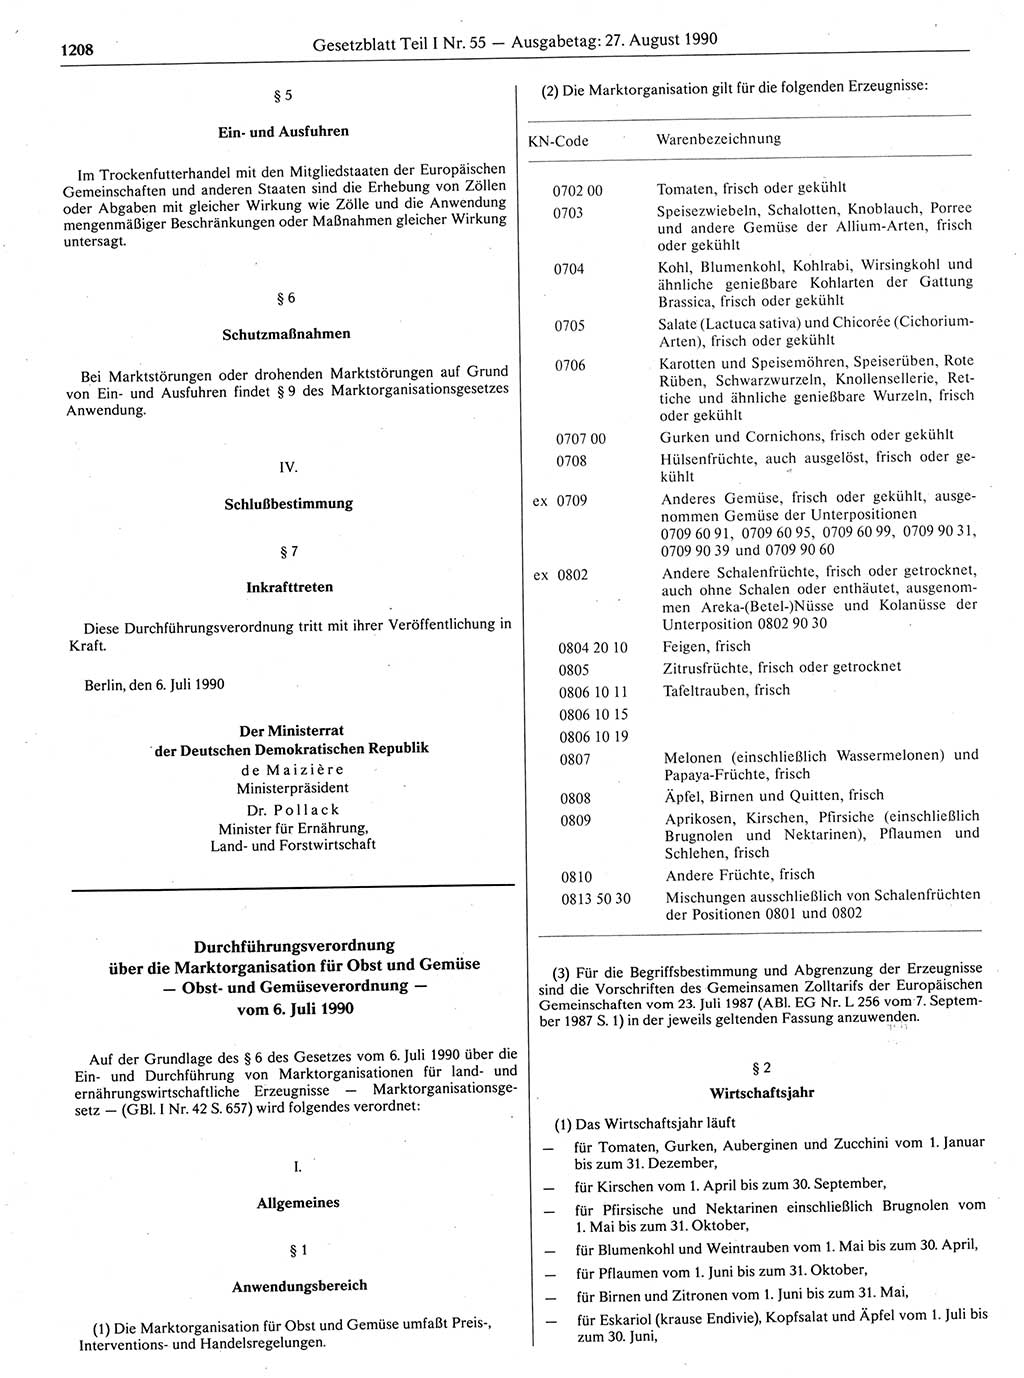 Gesetzblatt (GBl.) der Deutschen Demokratischen Republik (DDR) Teil Ⅰ 1990, Seite 1208 (GBl. DDR Ⅰ 1990, S. 1208)